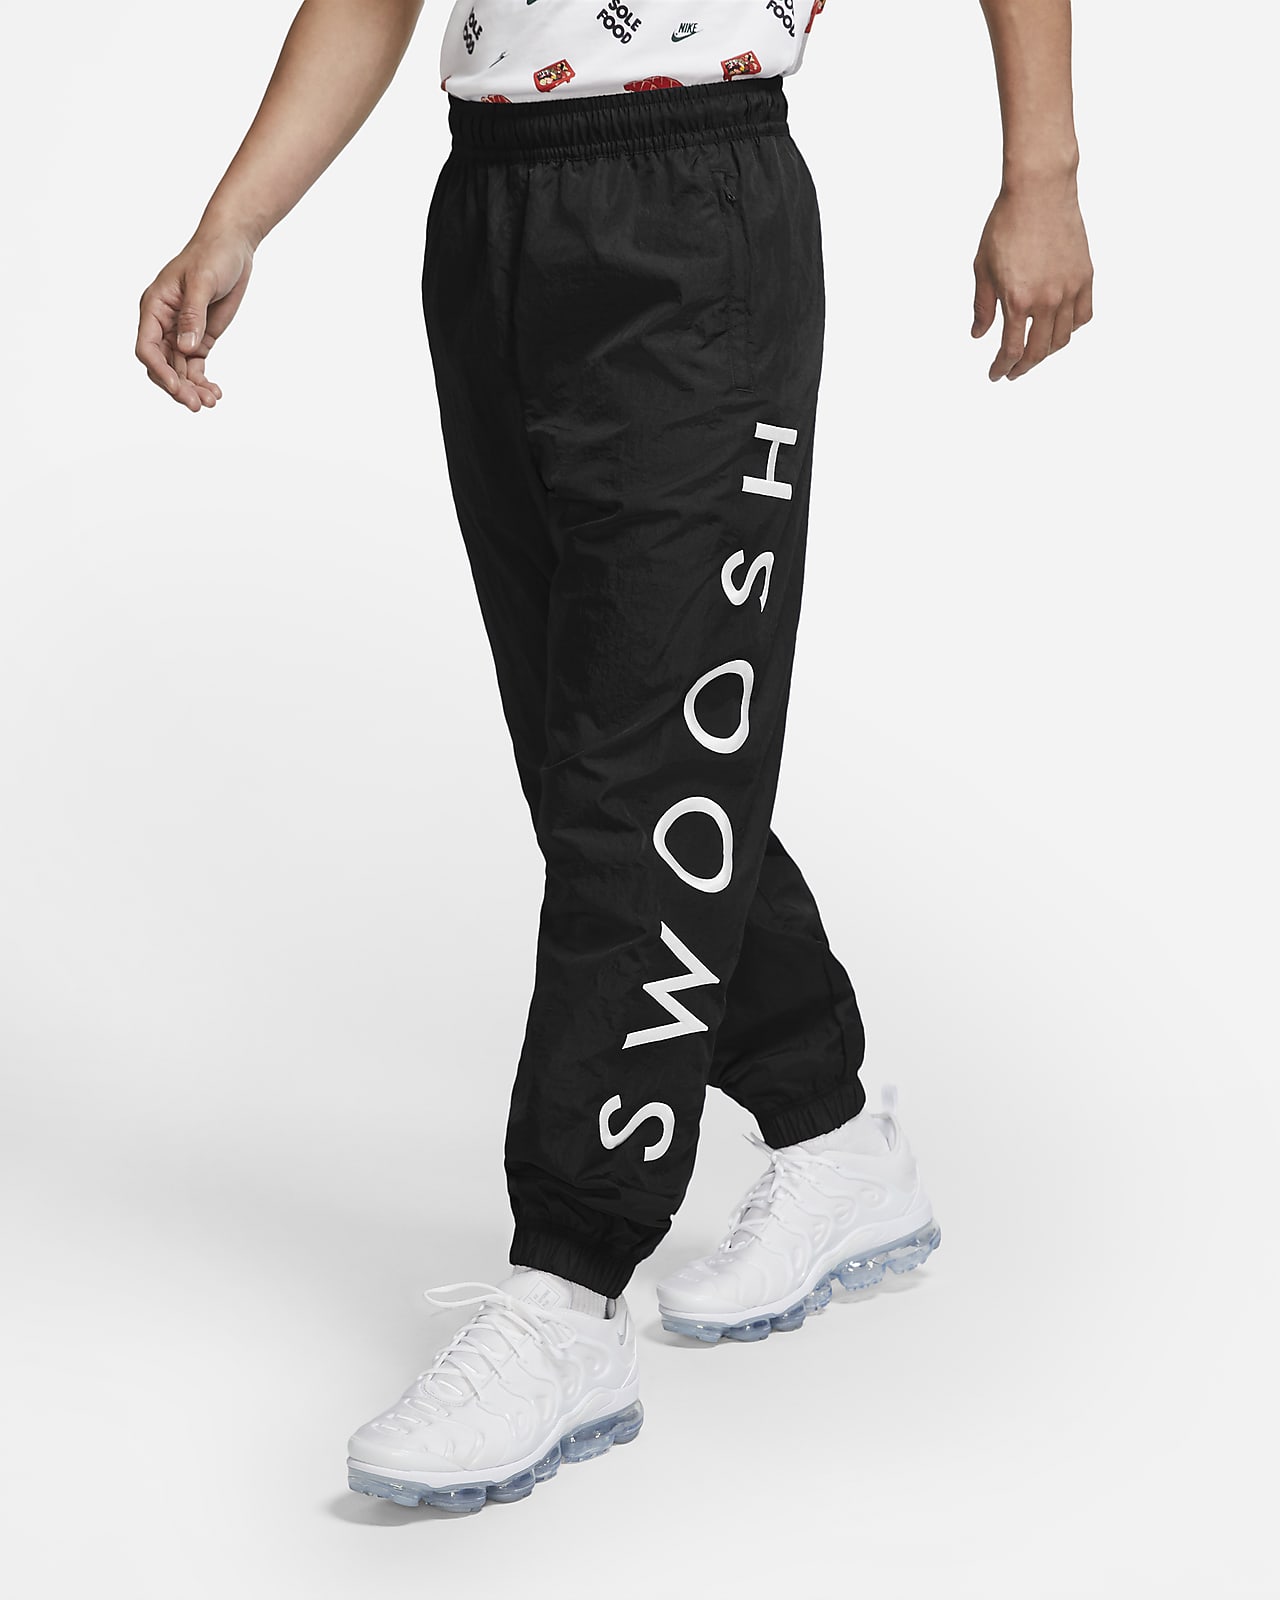 Download Nike Sportswear Swoosh Men's Woven Pants. Nike.com